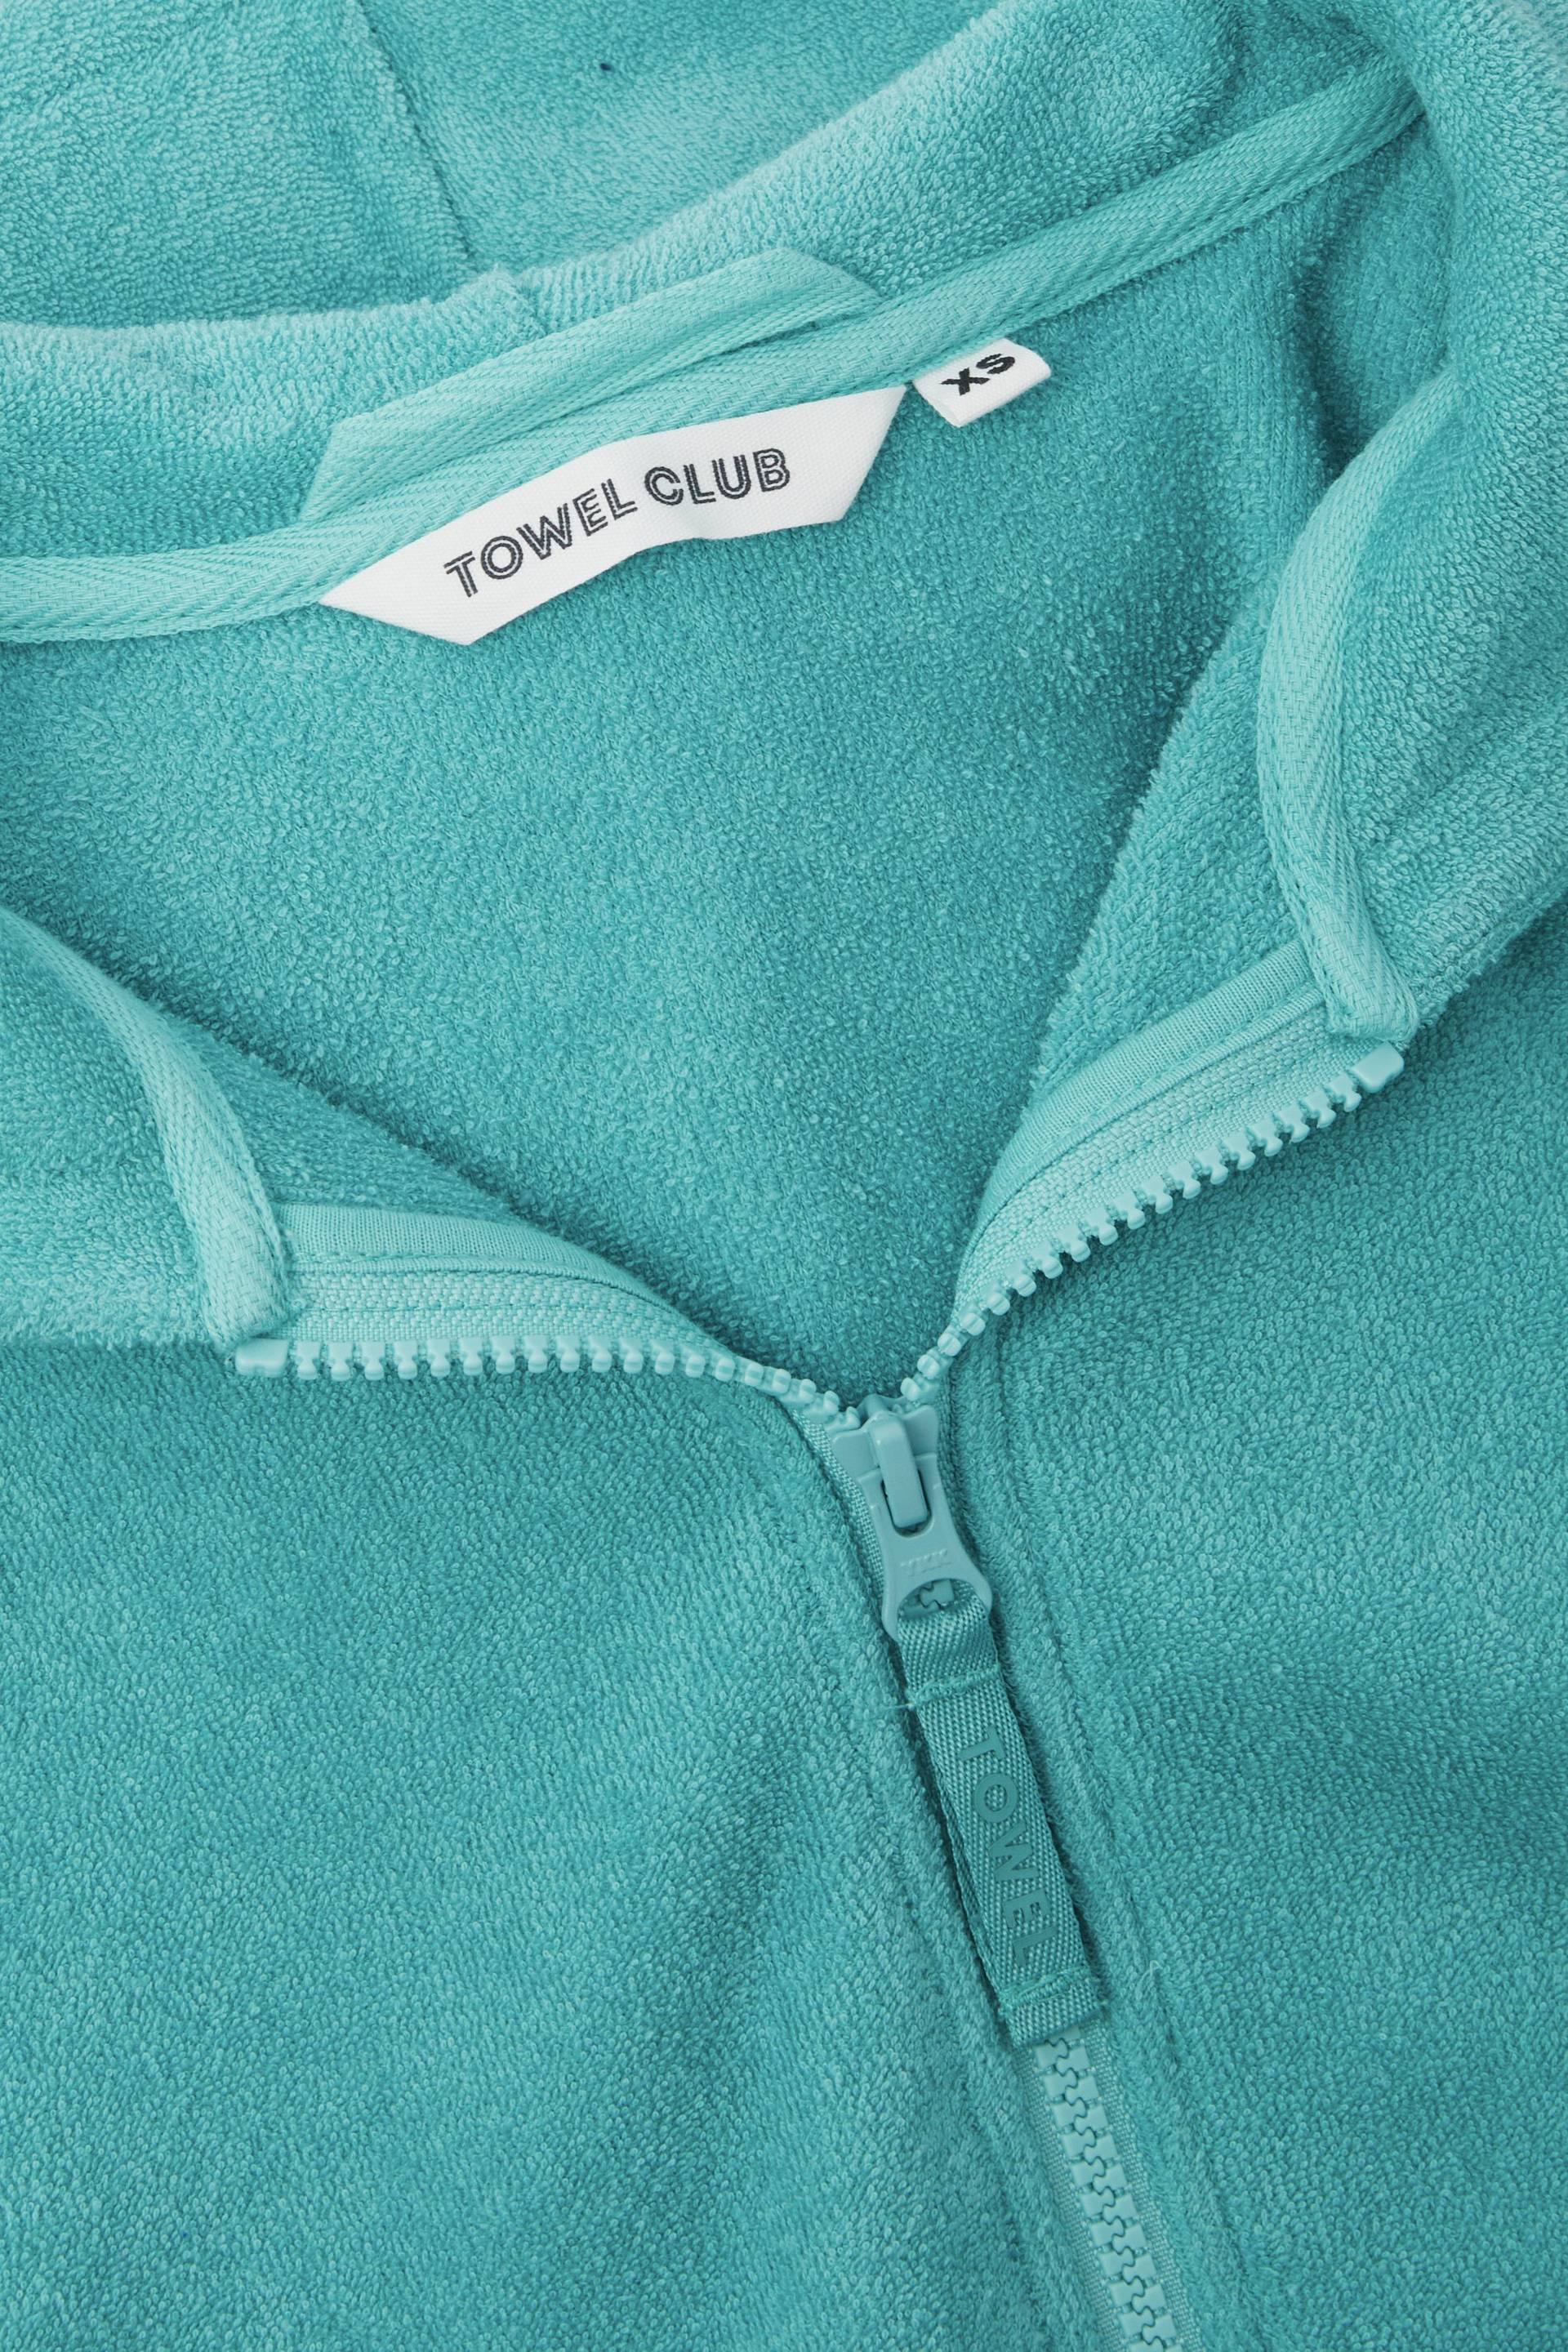 Towel Club Towel Club Short Fitted Jumpsuit Dark Mint - 2